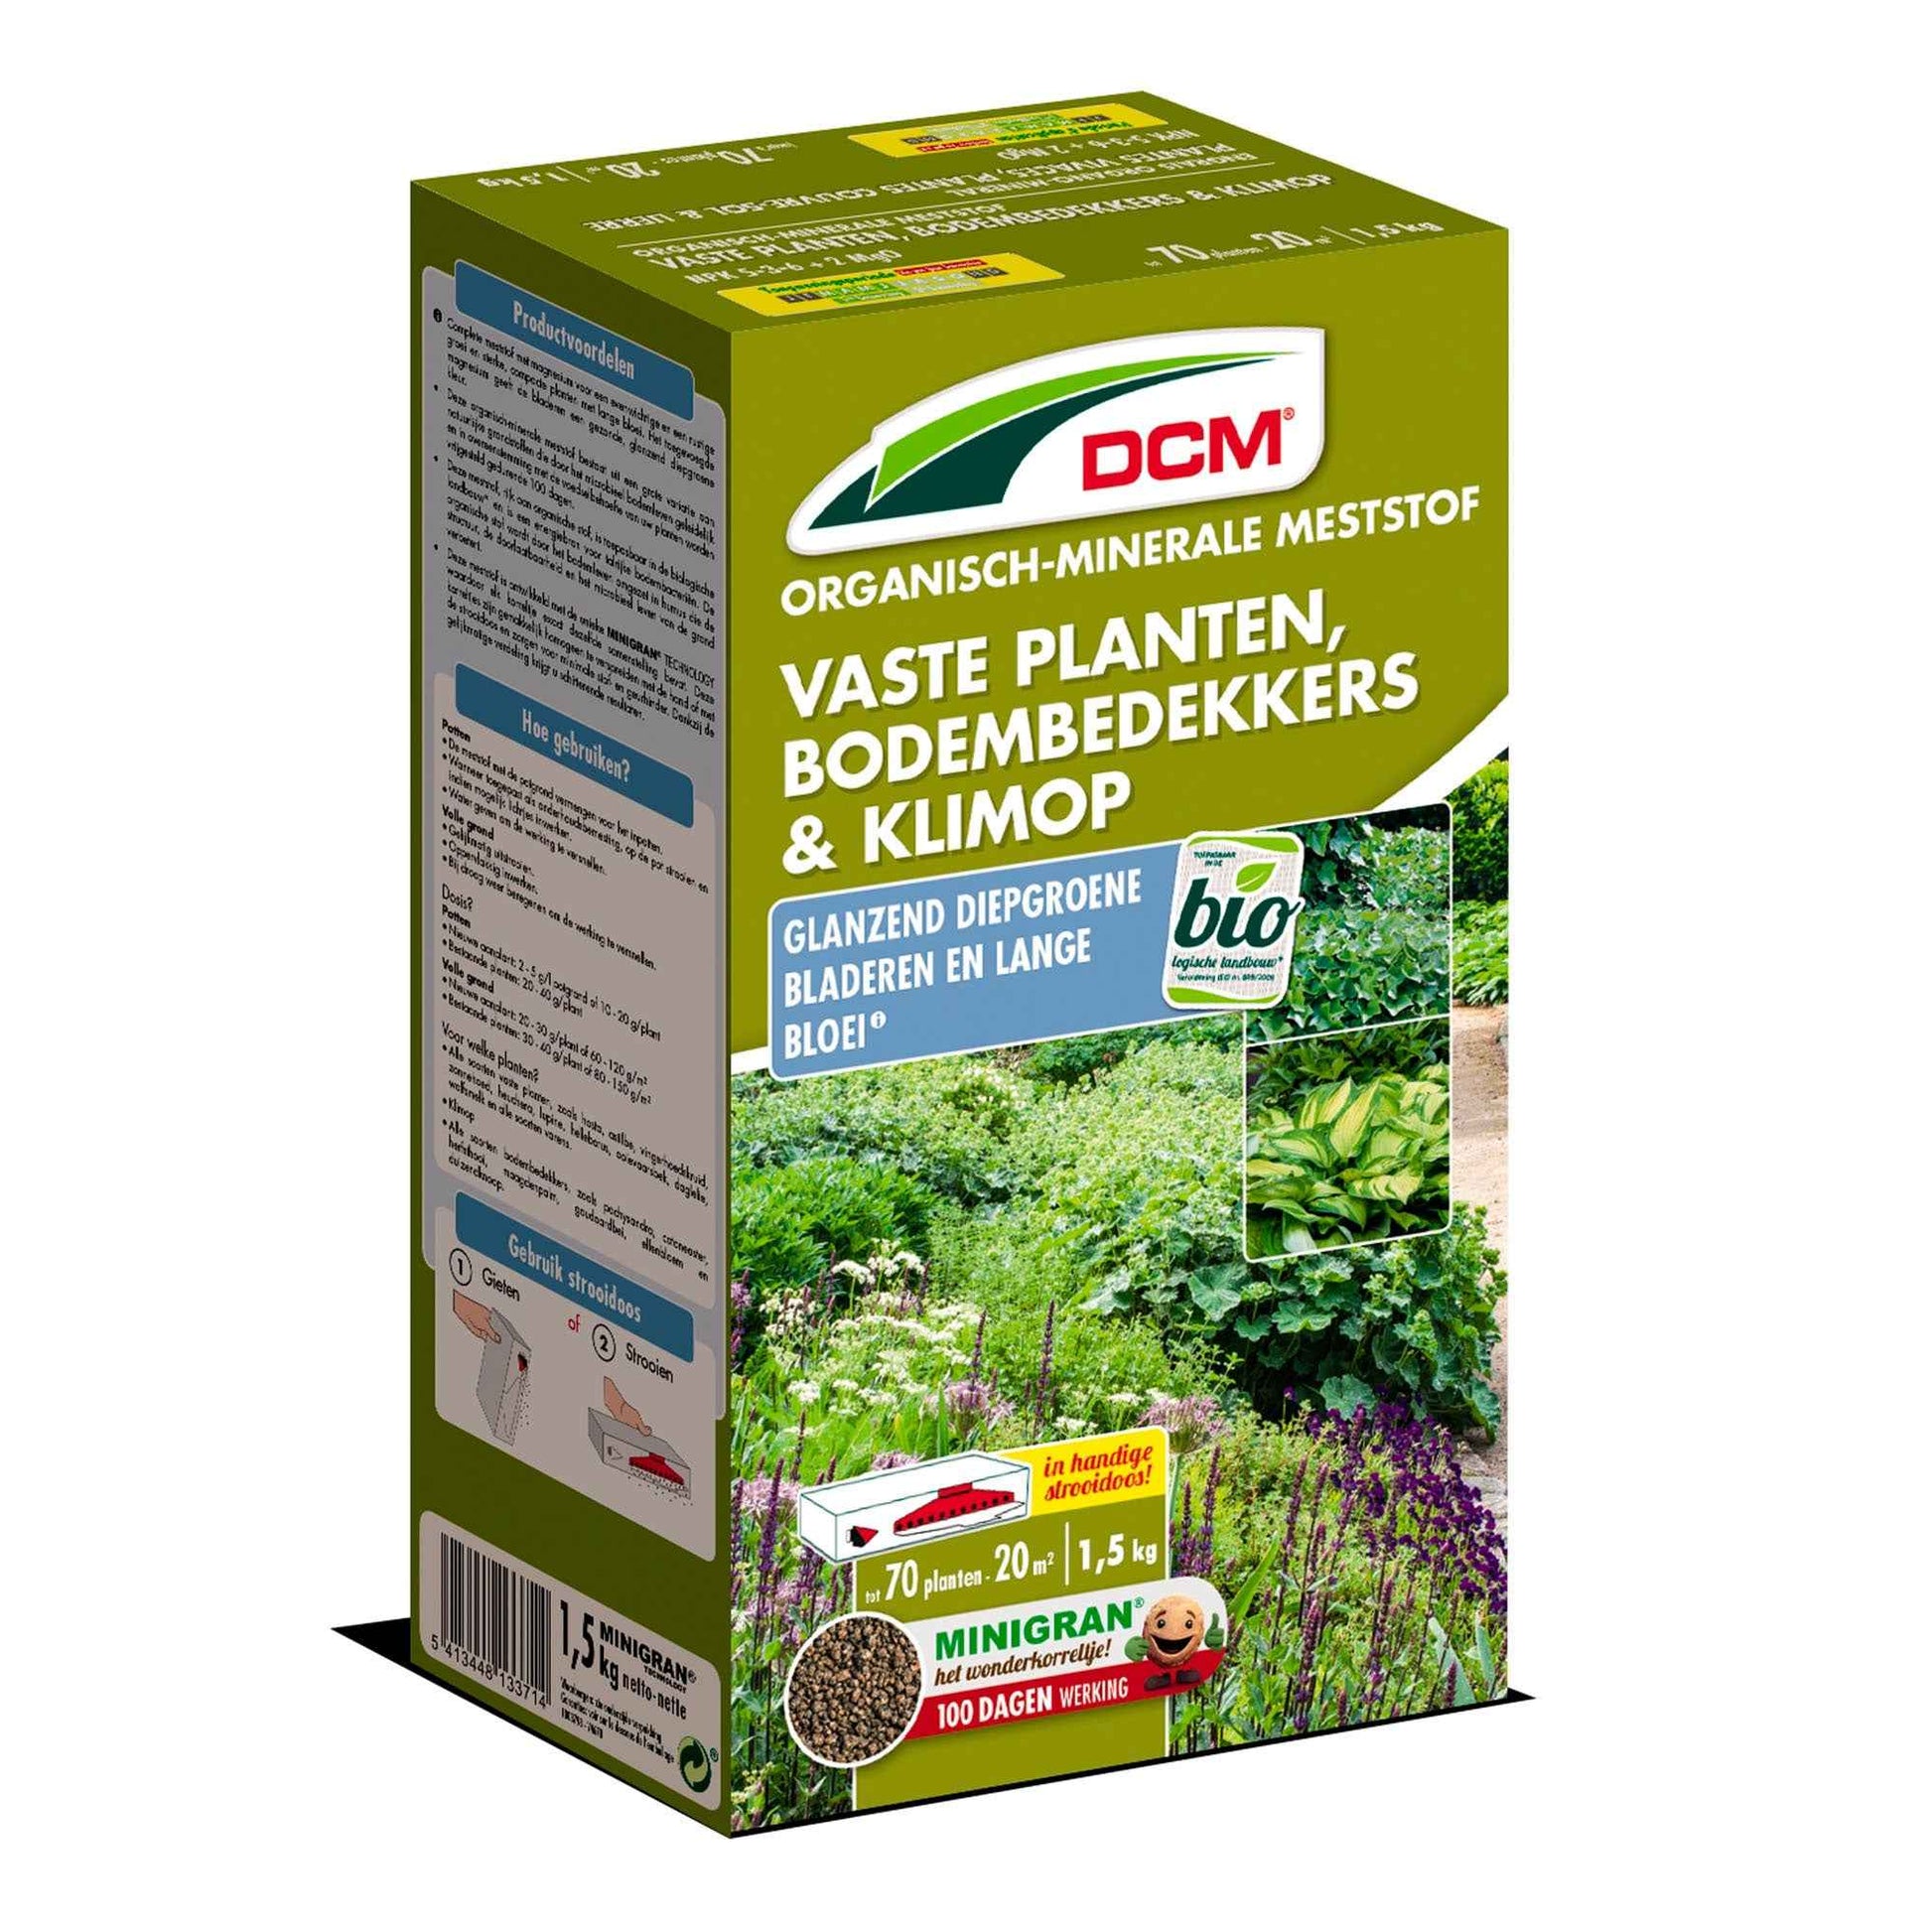 Plantenvoeding voor vaste planten, bodembedekkers & klimop - Biologisch 1,5 kg - DCM - Biologische plantenvoeding